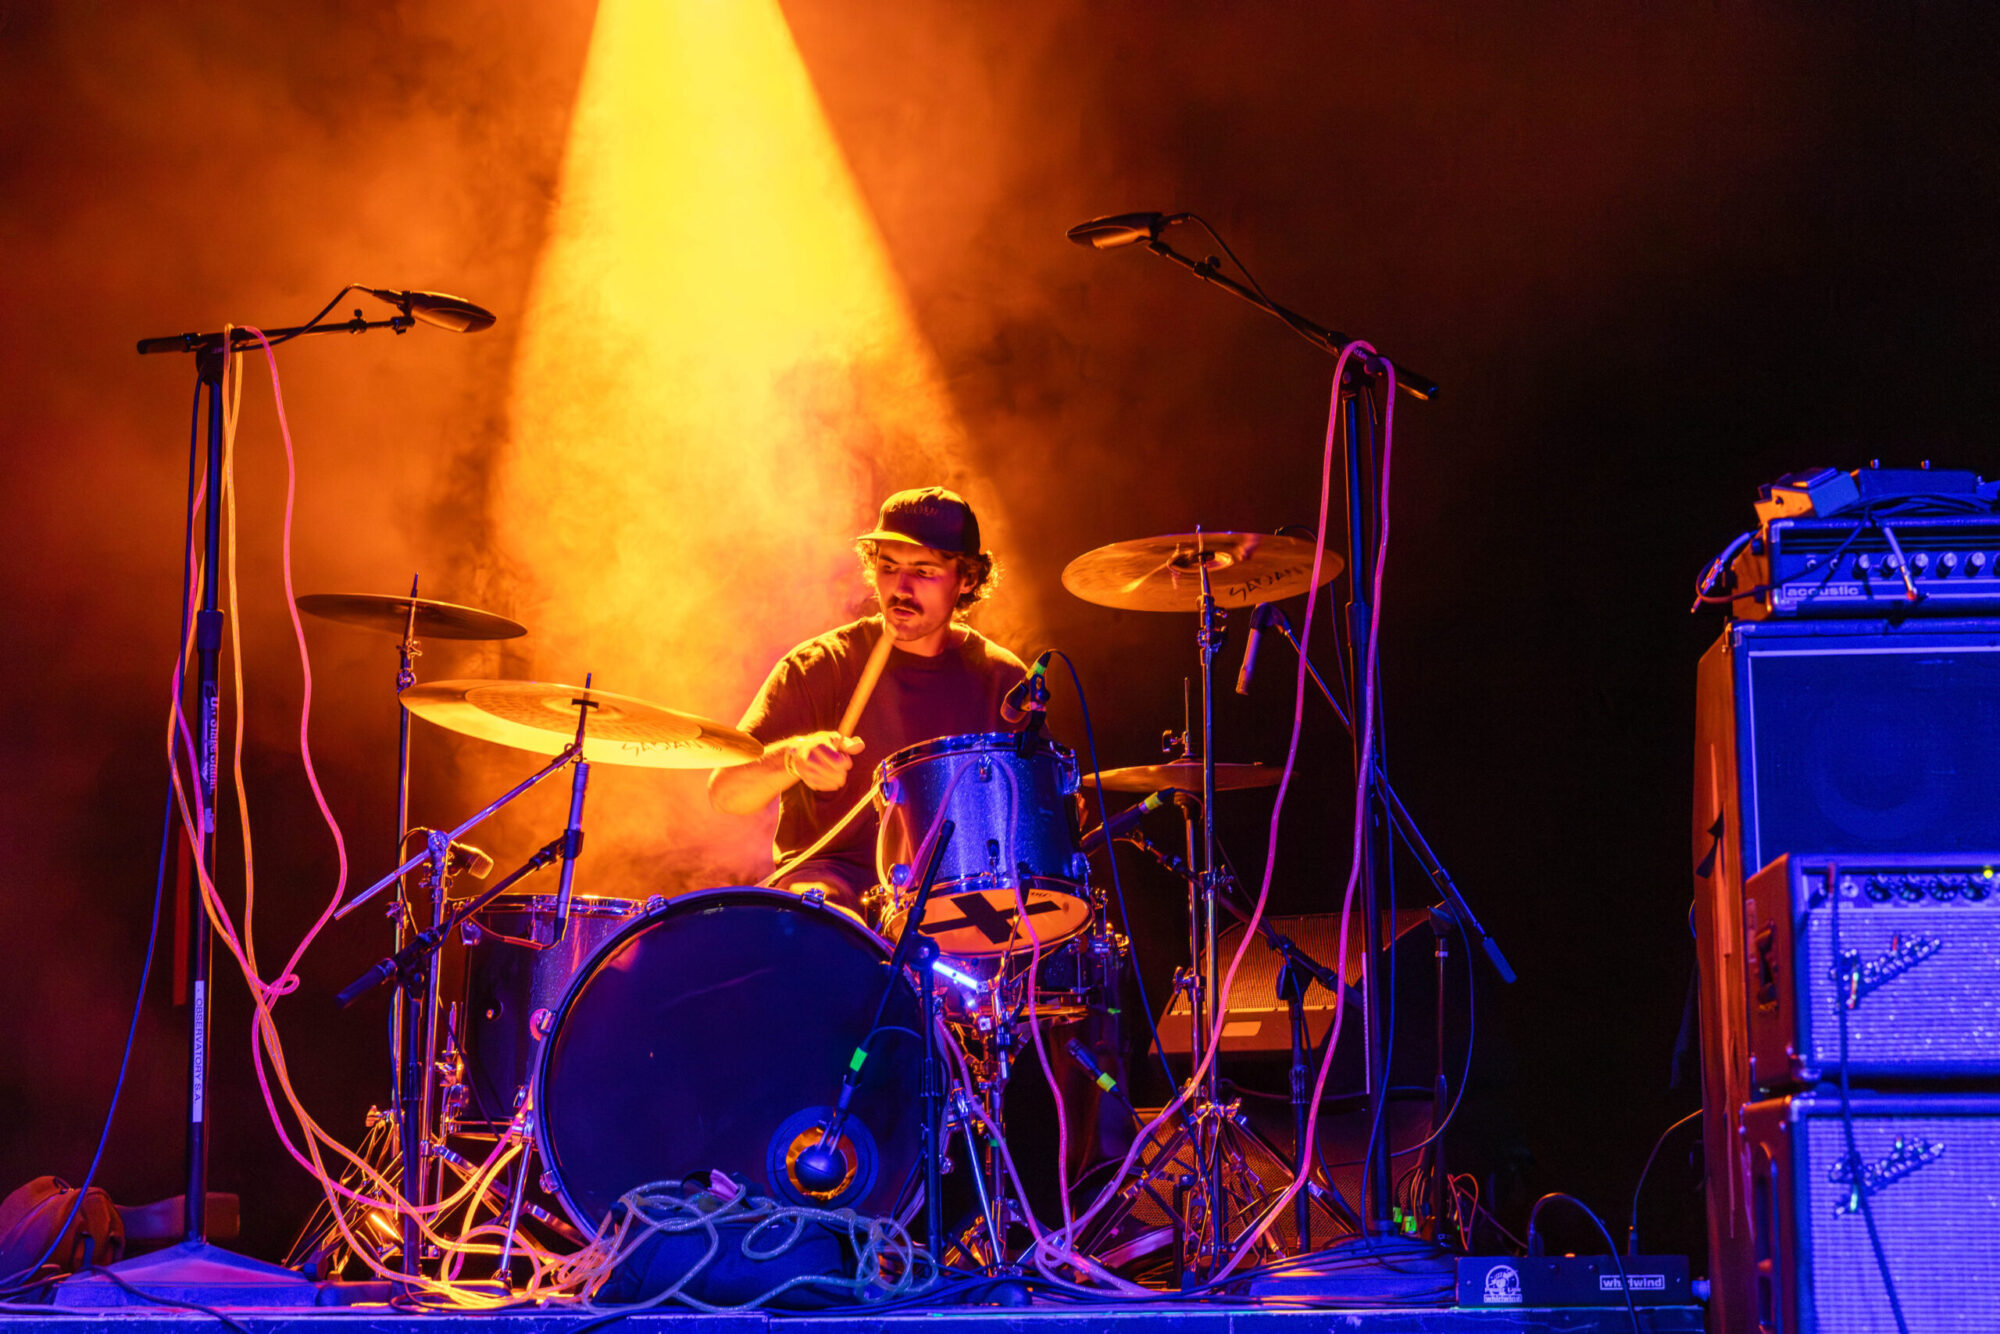 A drummer under orange light